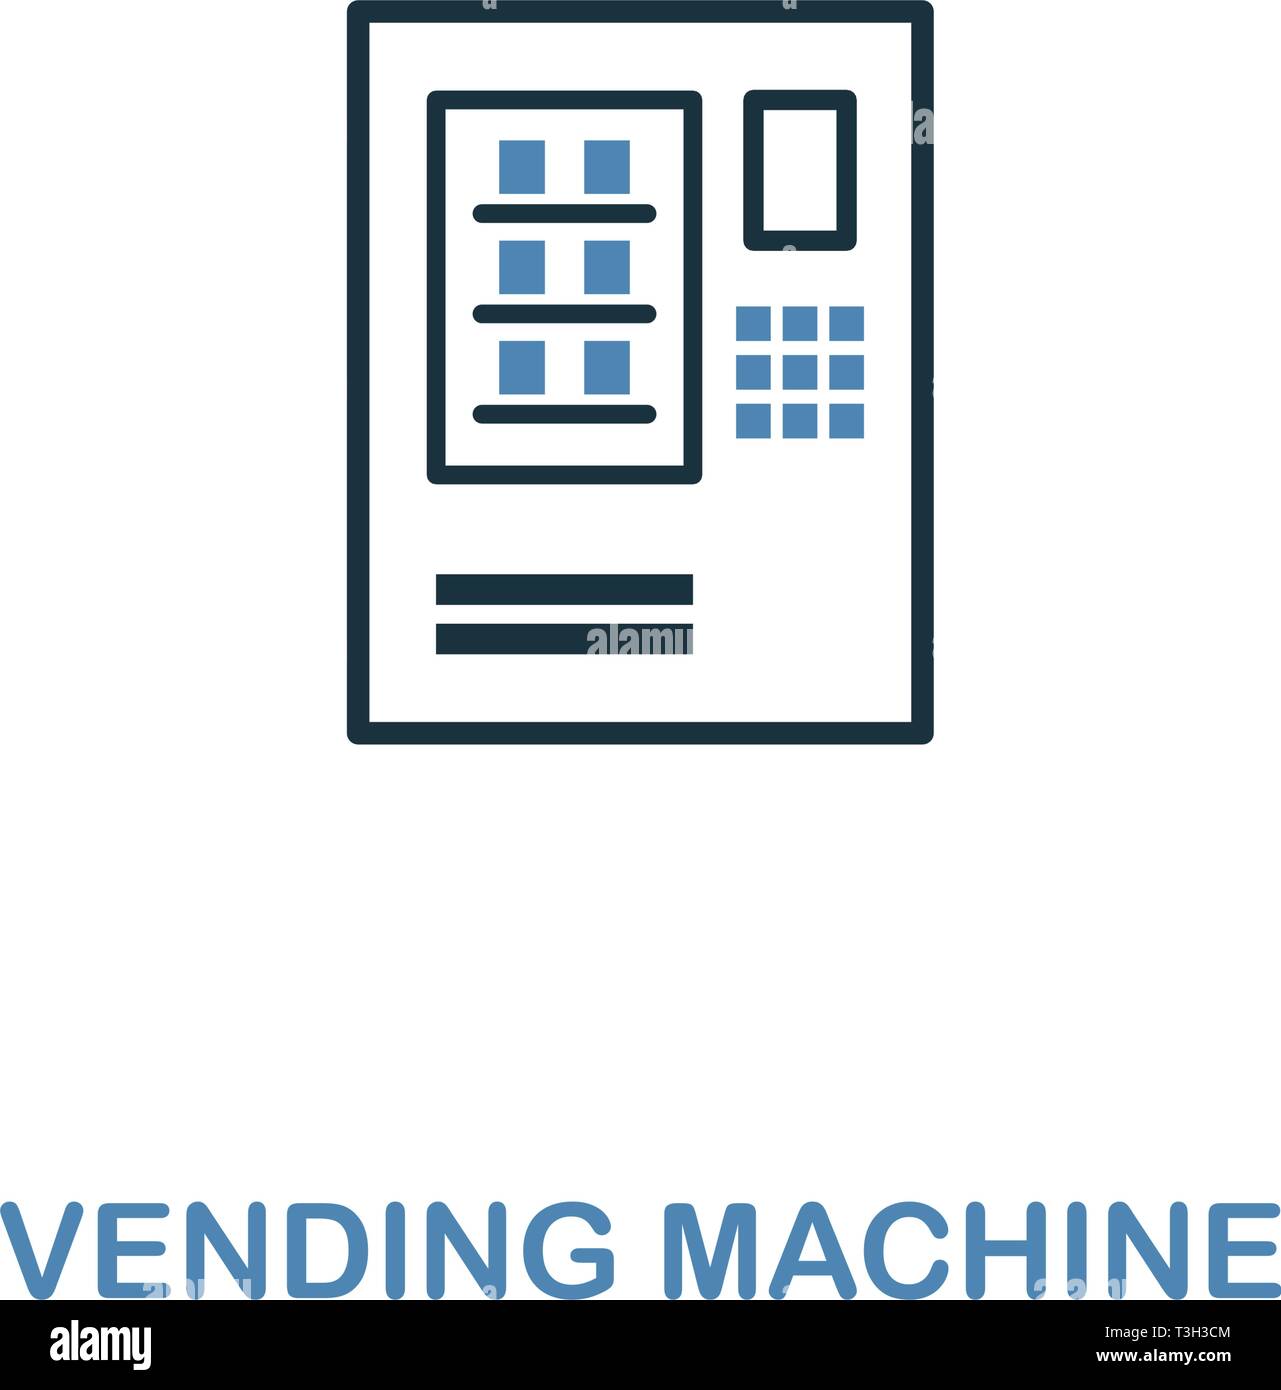 Vending Machine Icona in due colori. Creative design da elementi della città raccolta di icone. Colorato vending machine icona per il web e i dispositivi mobili. Illustrazione Vettoriale